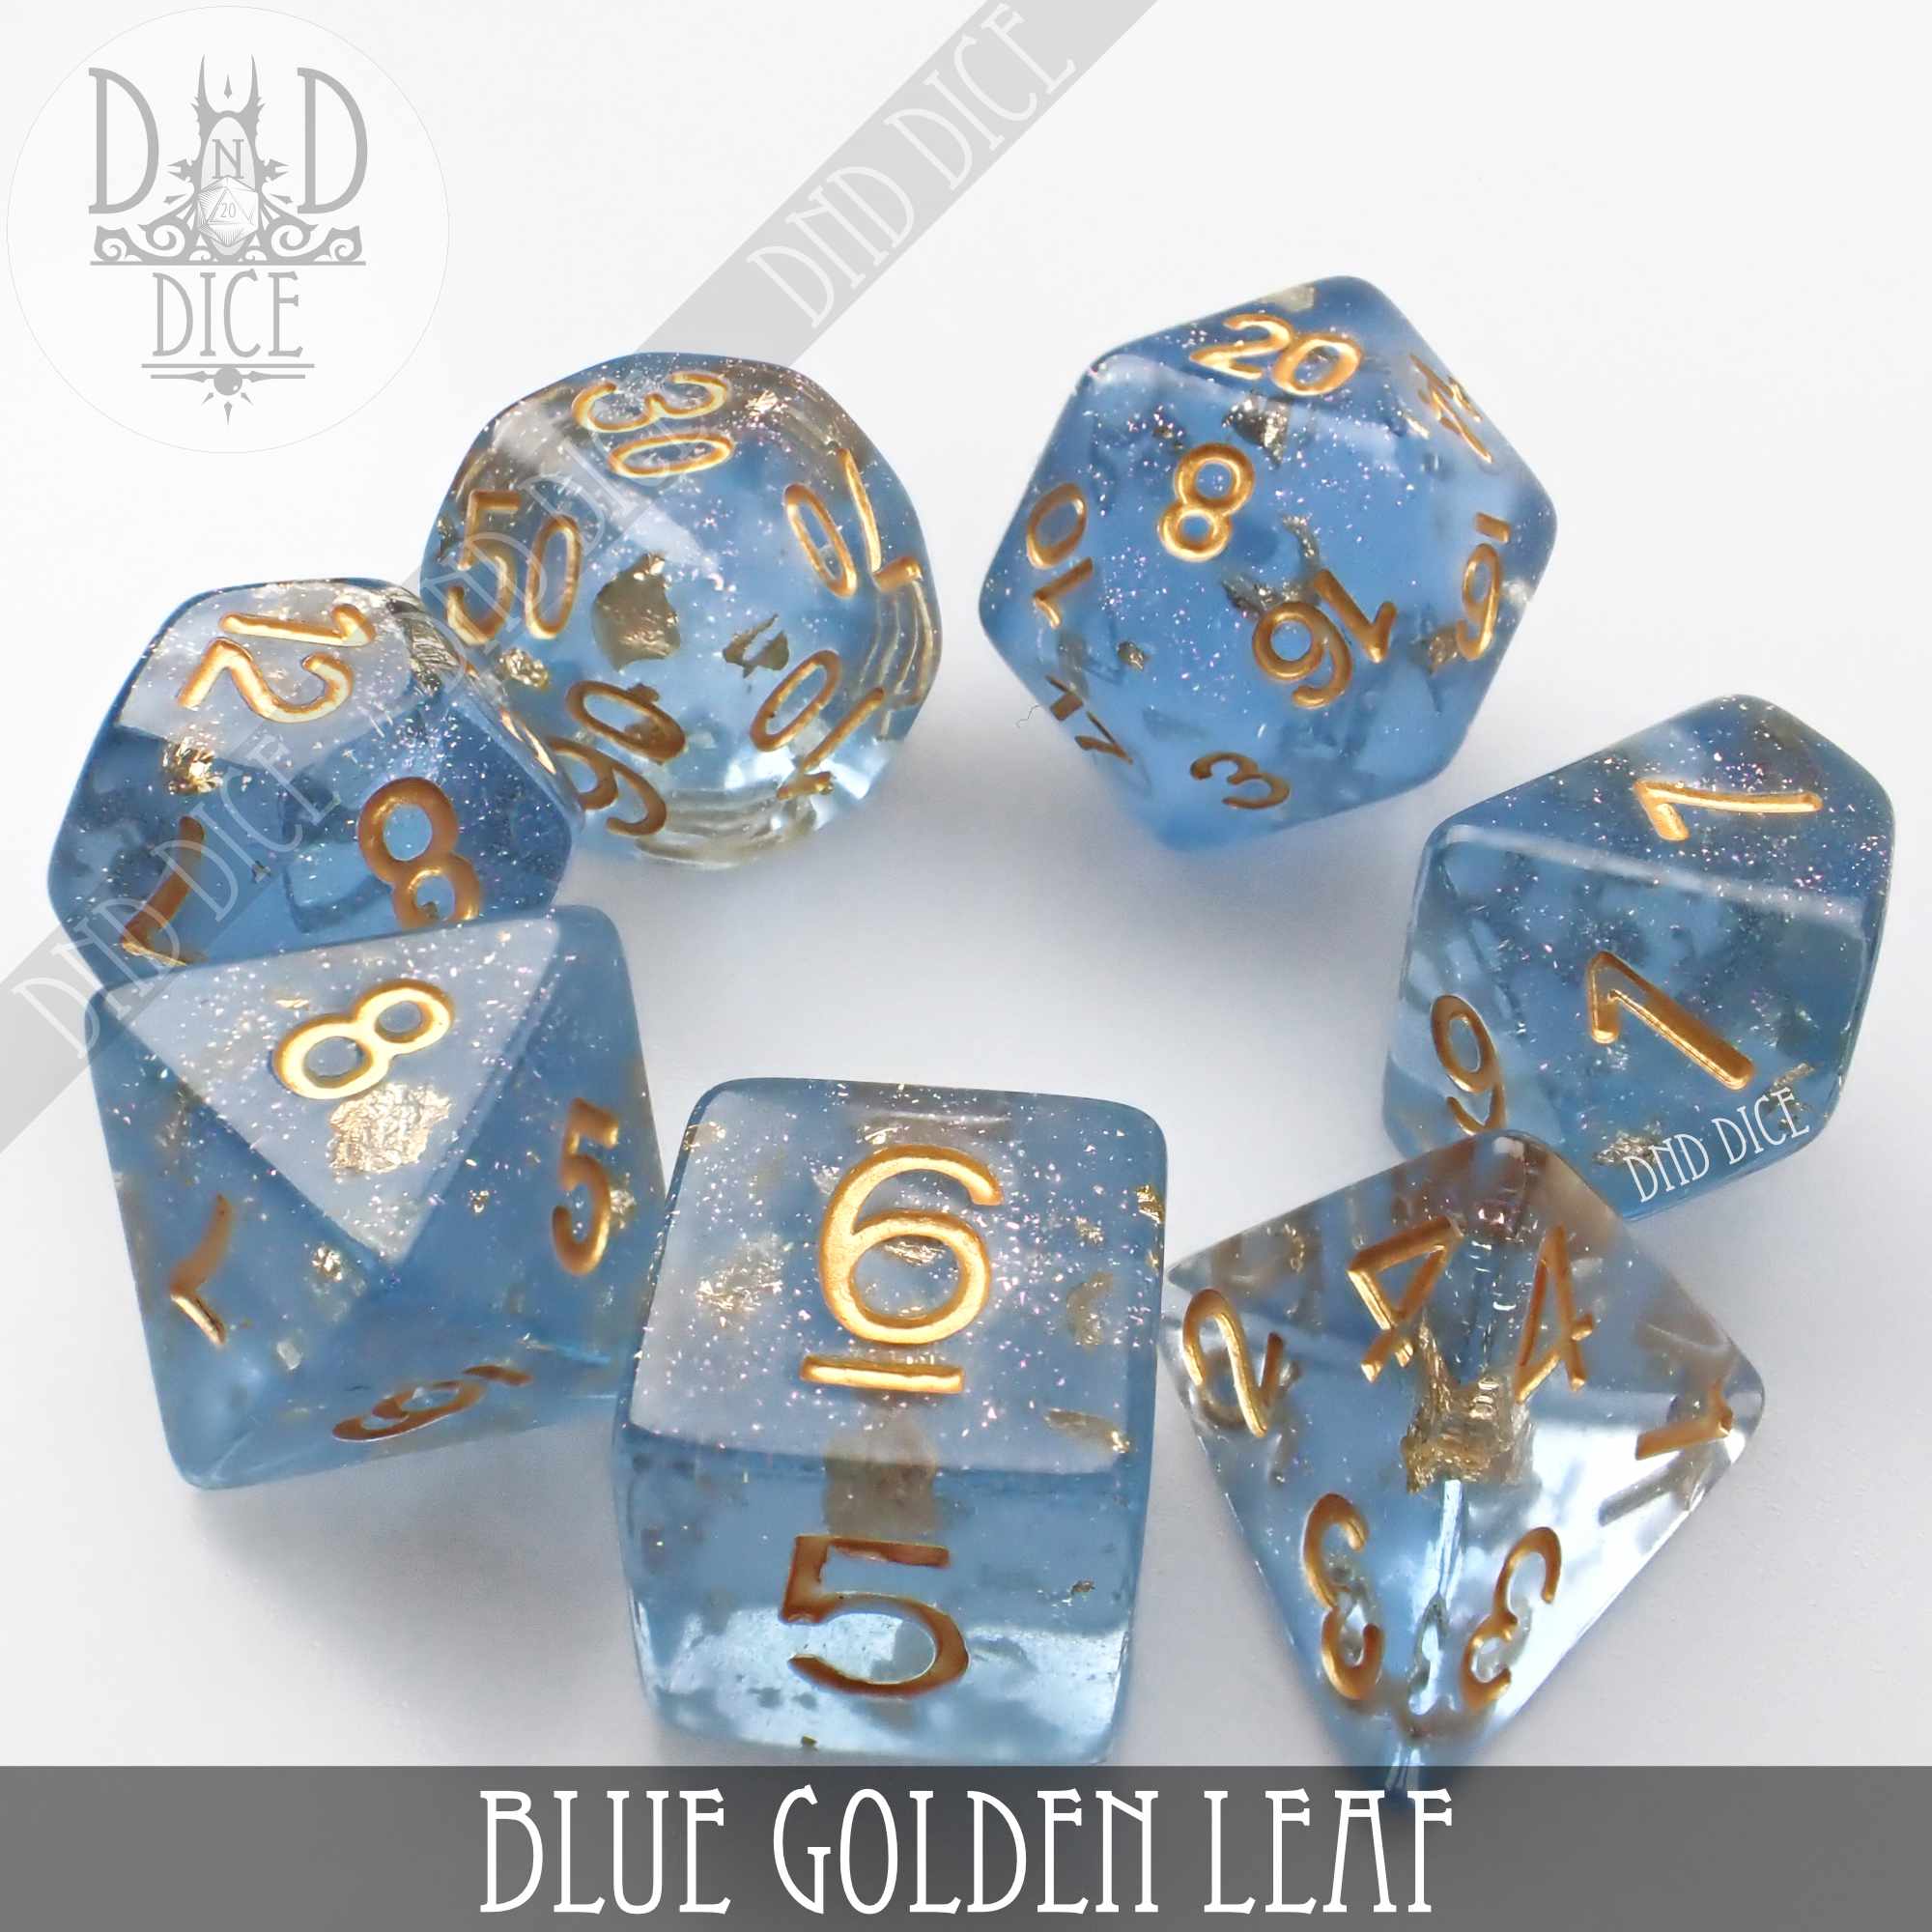 Blue Golden Leaf Dice Set